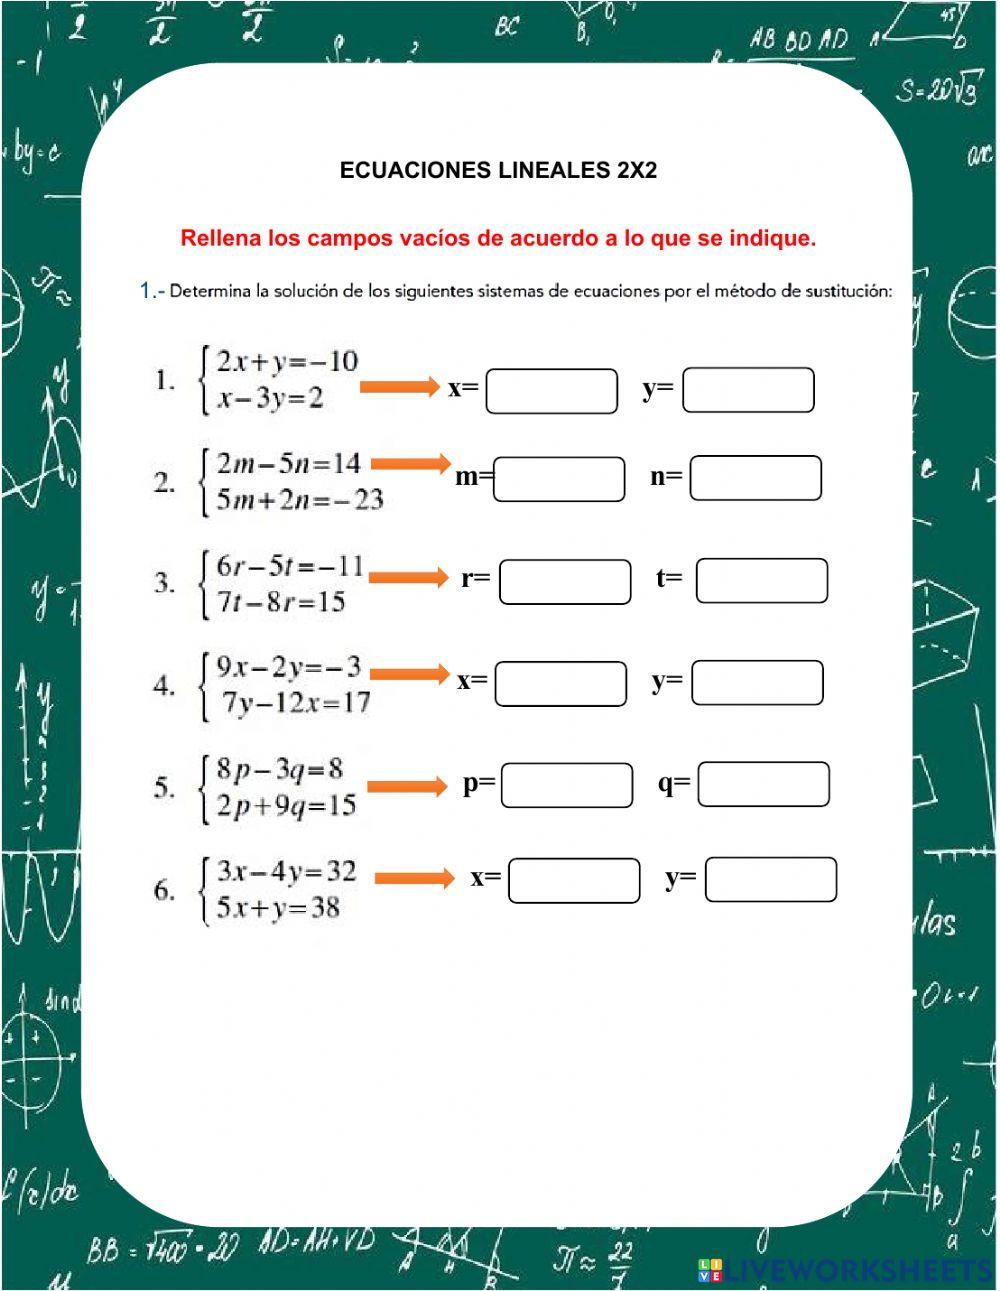 Ecuaciones lineales 2x2